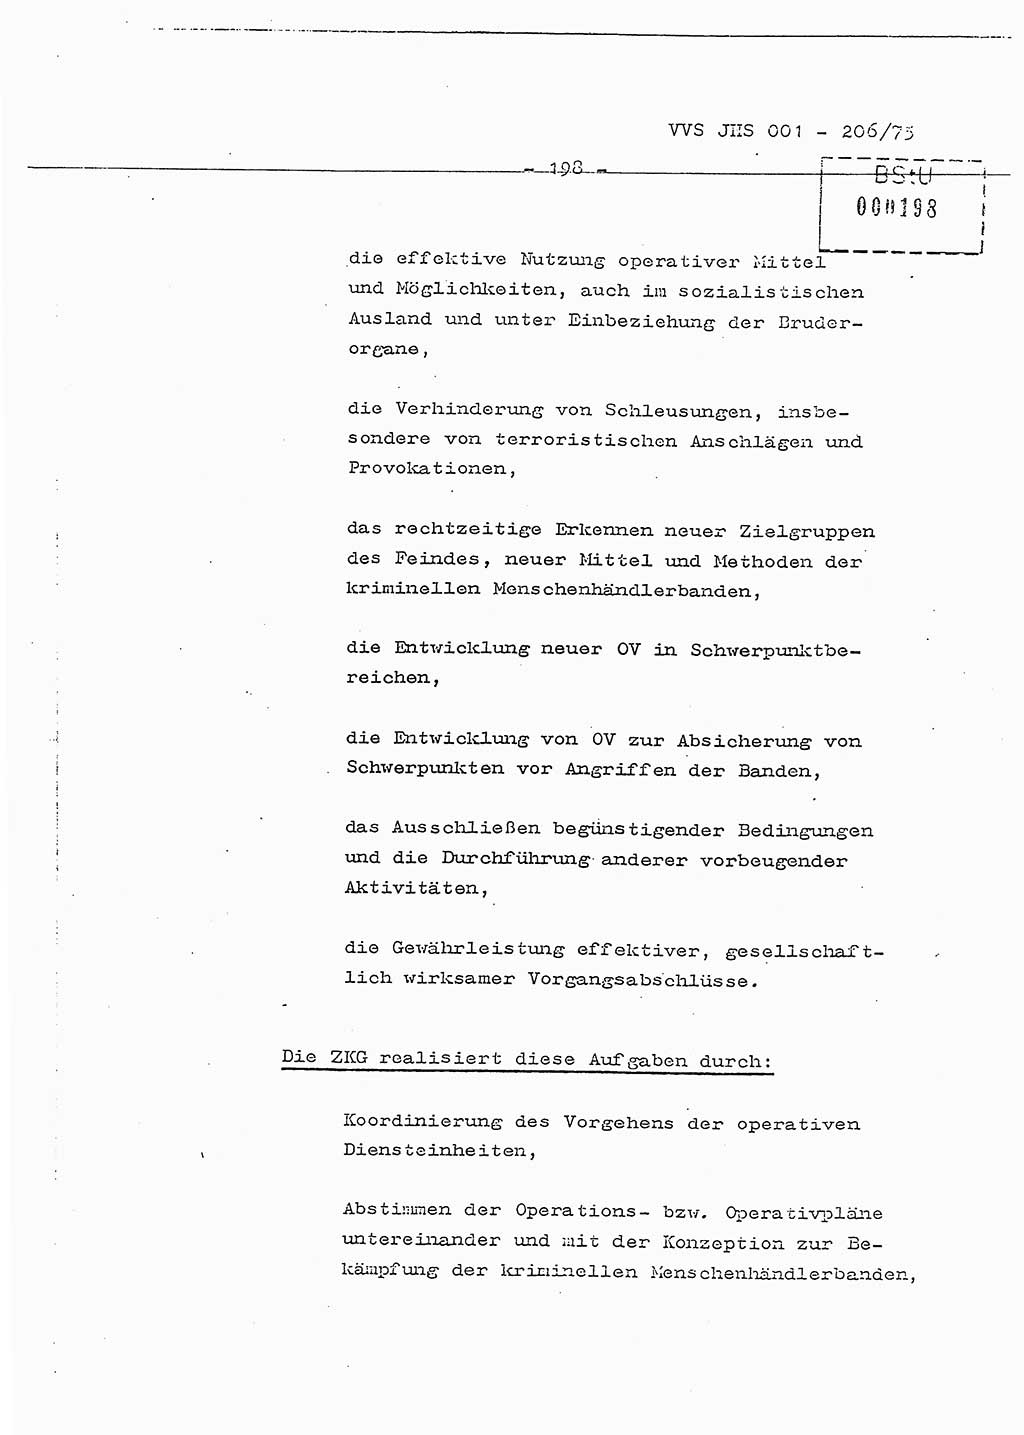 Dissertation Generalmajor Manfred Hummitzsch (Leiter der BV Leipzig), Generalmajor Heinz Fiedler (HA Ⅵ), Oberst Rolf Fister (HA Ⅸ), Ministerium für Staatssicherheit (MfS) [Deutsche Demokratische Republik (DDR)], Juristische Hochschule (JHS), Vertrauliche Verschlußsache (VVS) 001-206/75, Potsdam 1975, Seite 198 (Diss. MfS DDR JHS VVS 001-206/75 1975, S. 198)